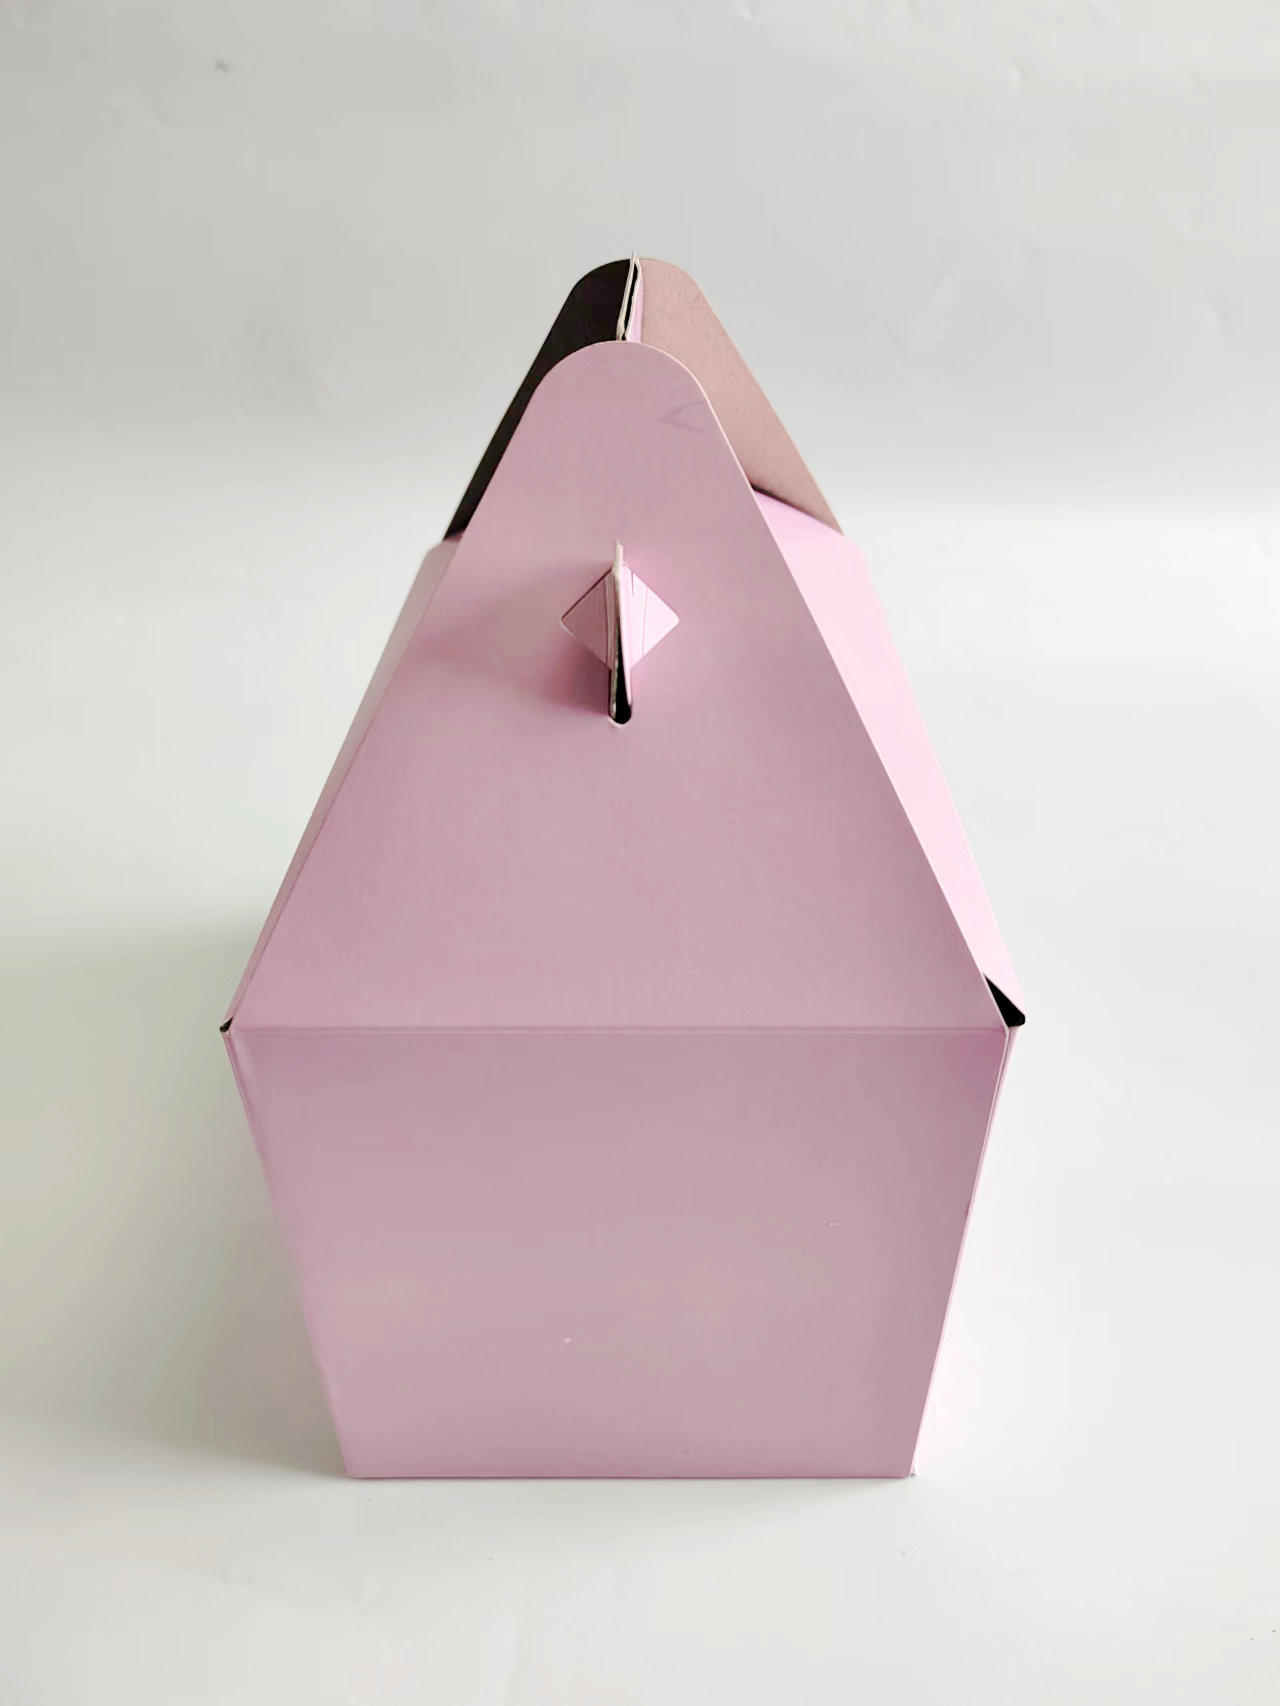 粉色纸盒